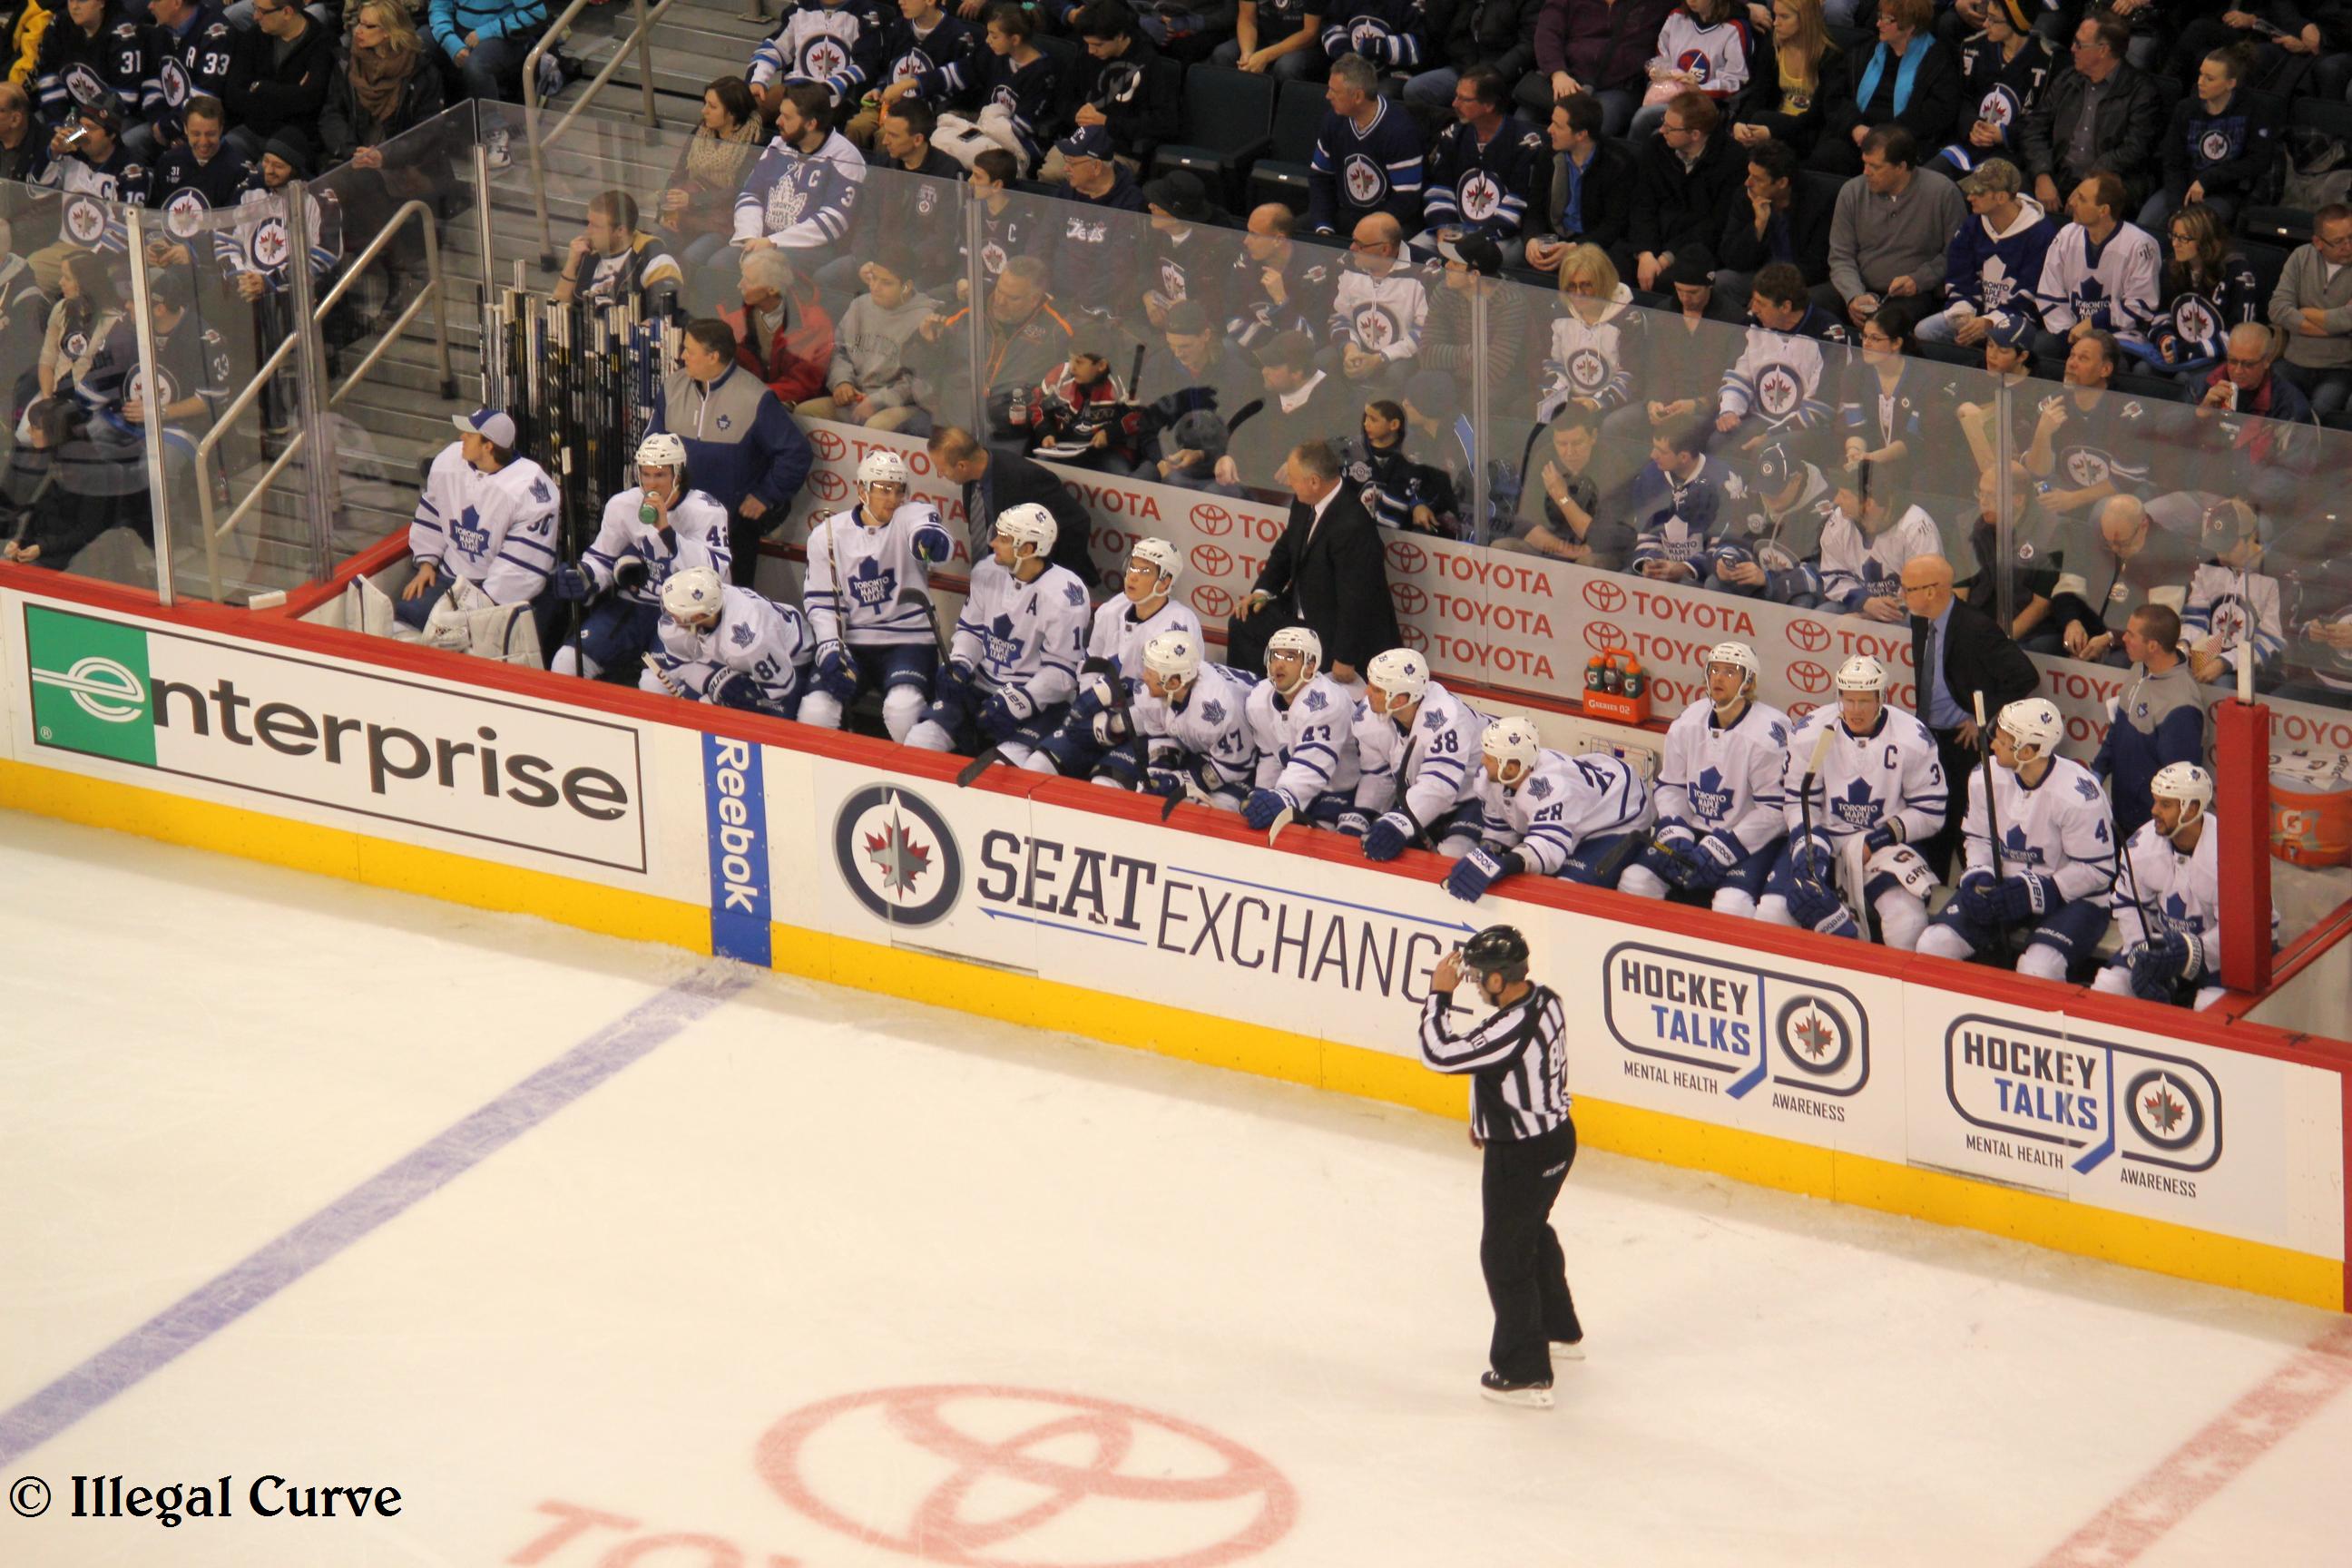 Leafs bench Feb 7 2013